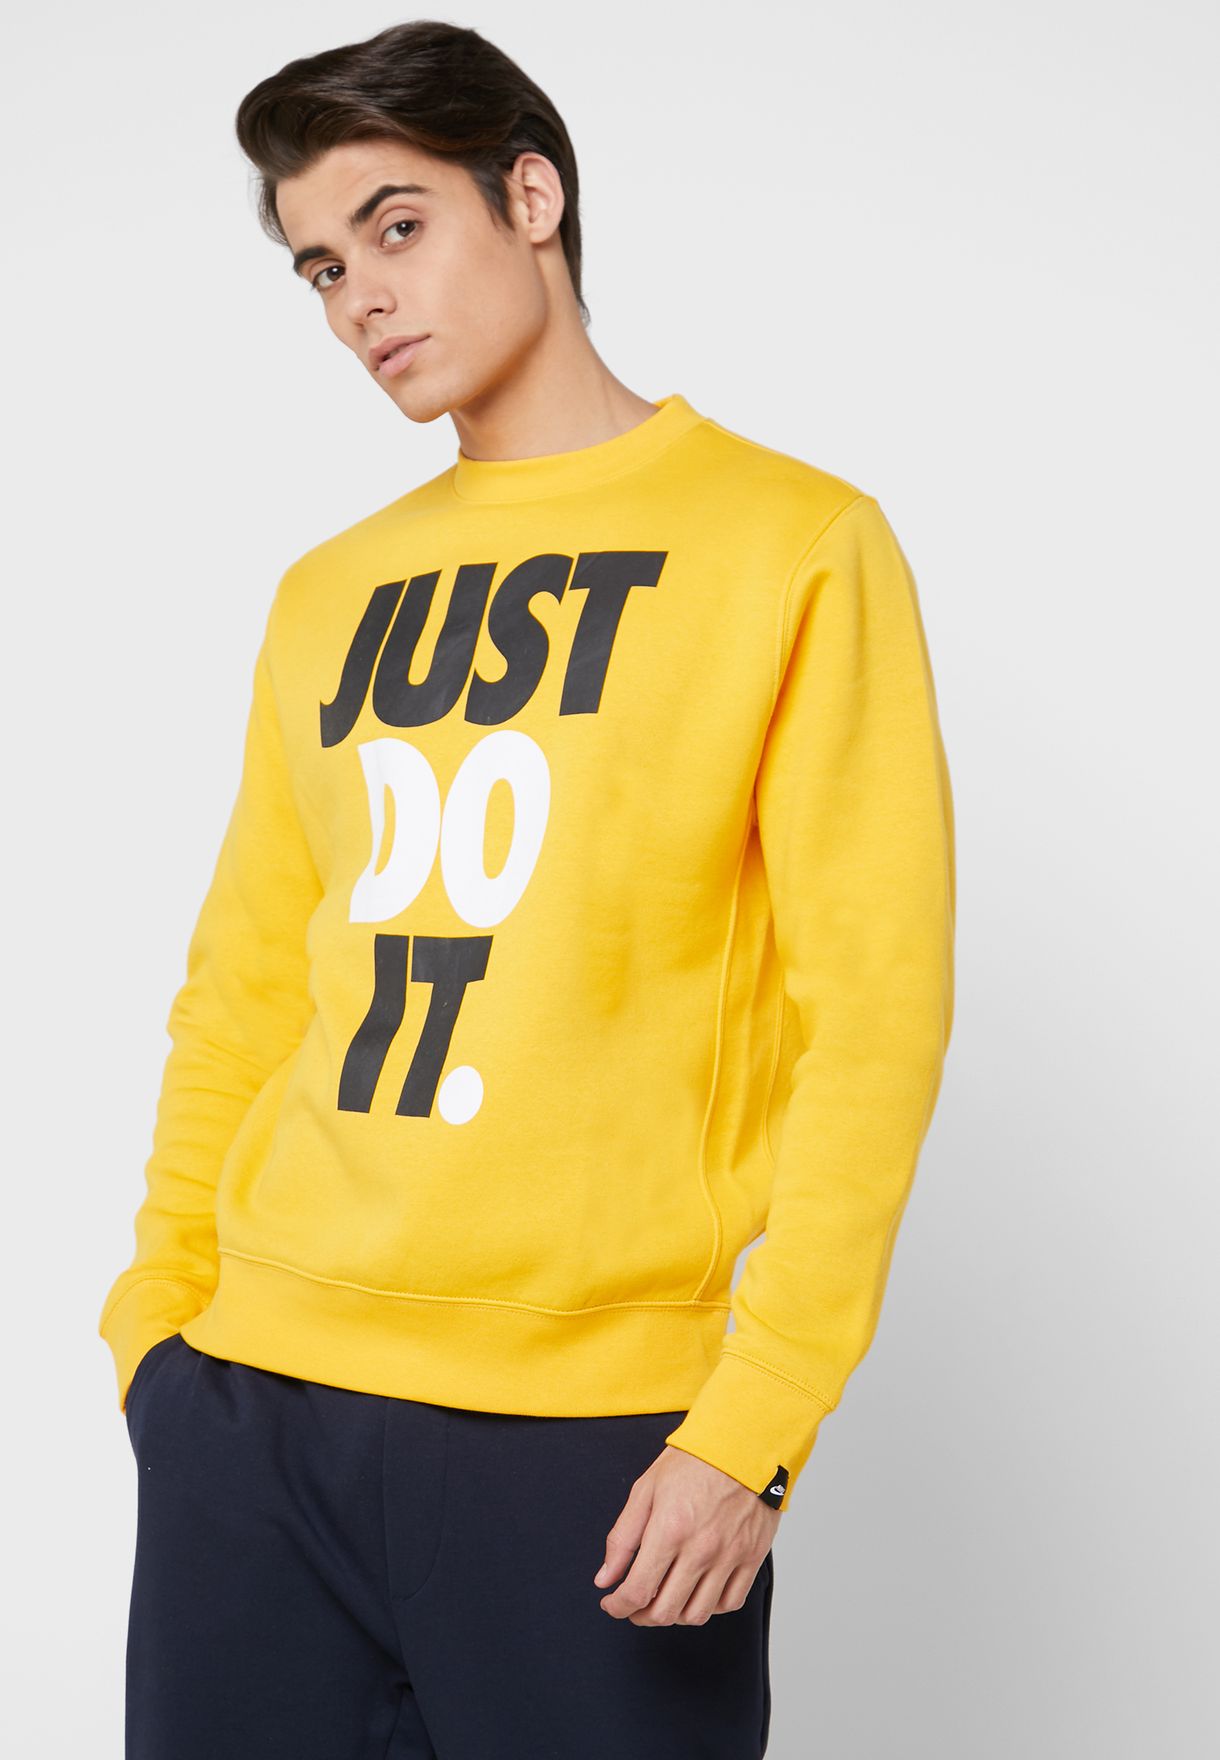 Buy > hoodie just do it nike > in stock